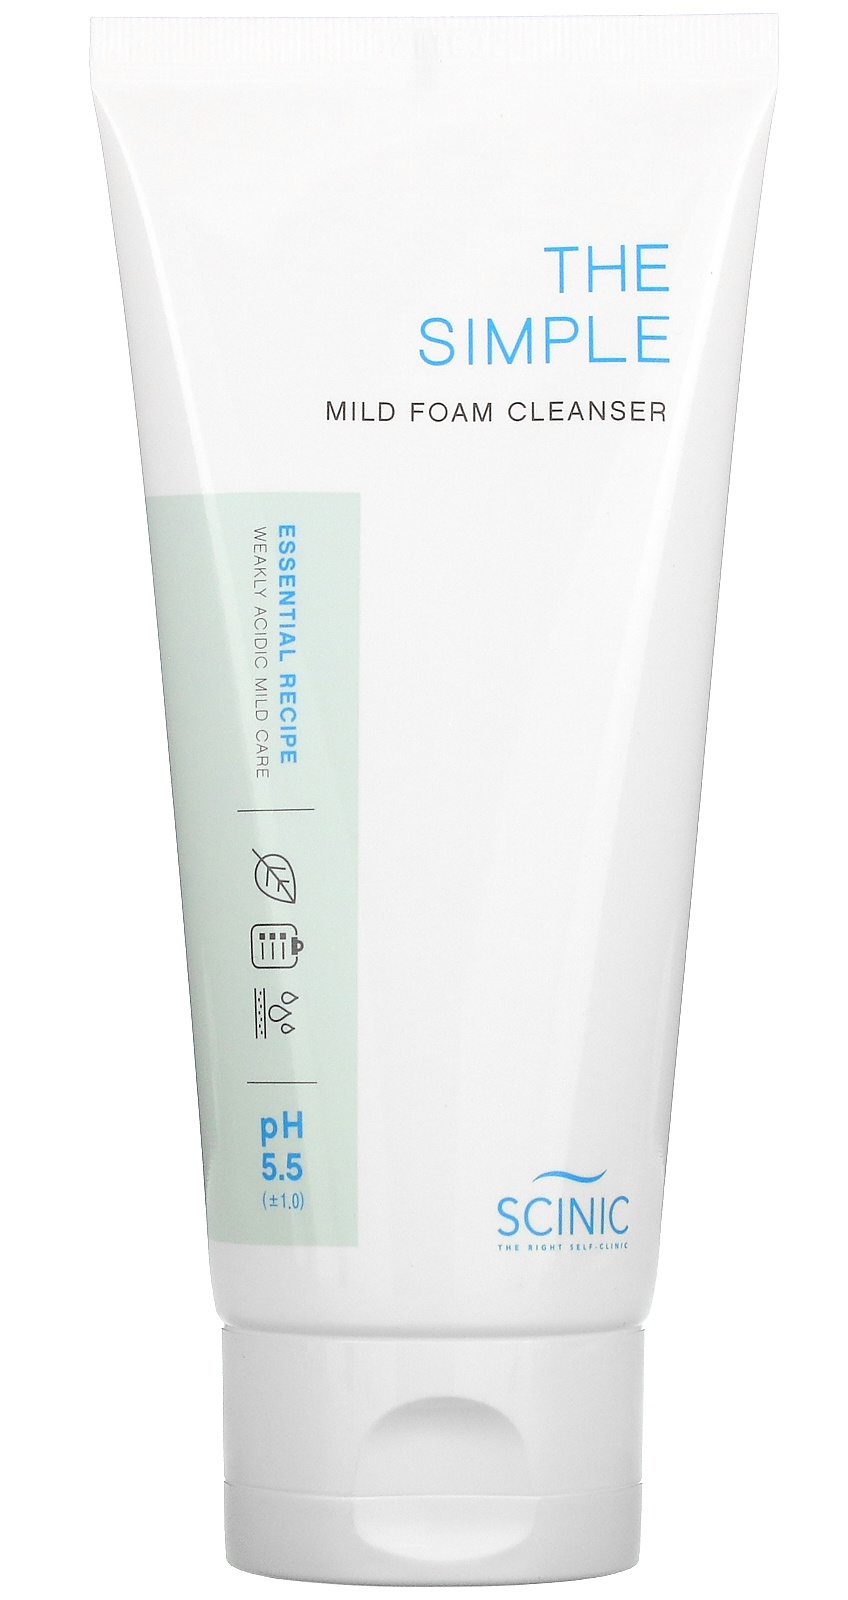 Scinic The Simple Mild Foam Cleanser, pH 5.5